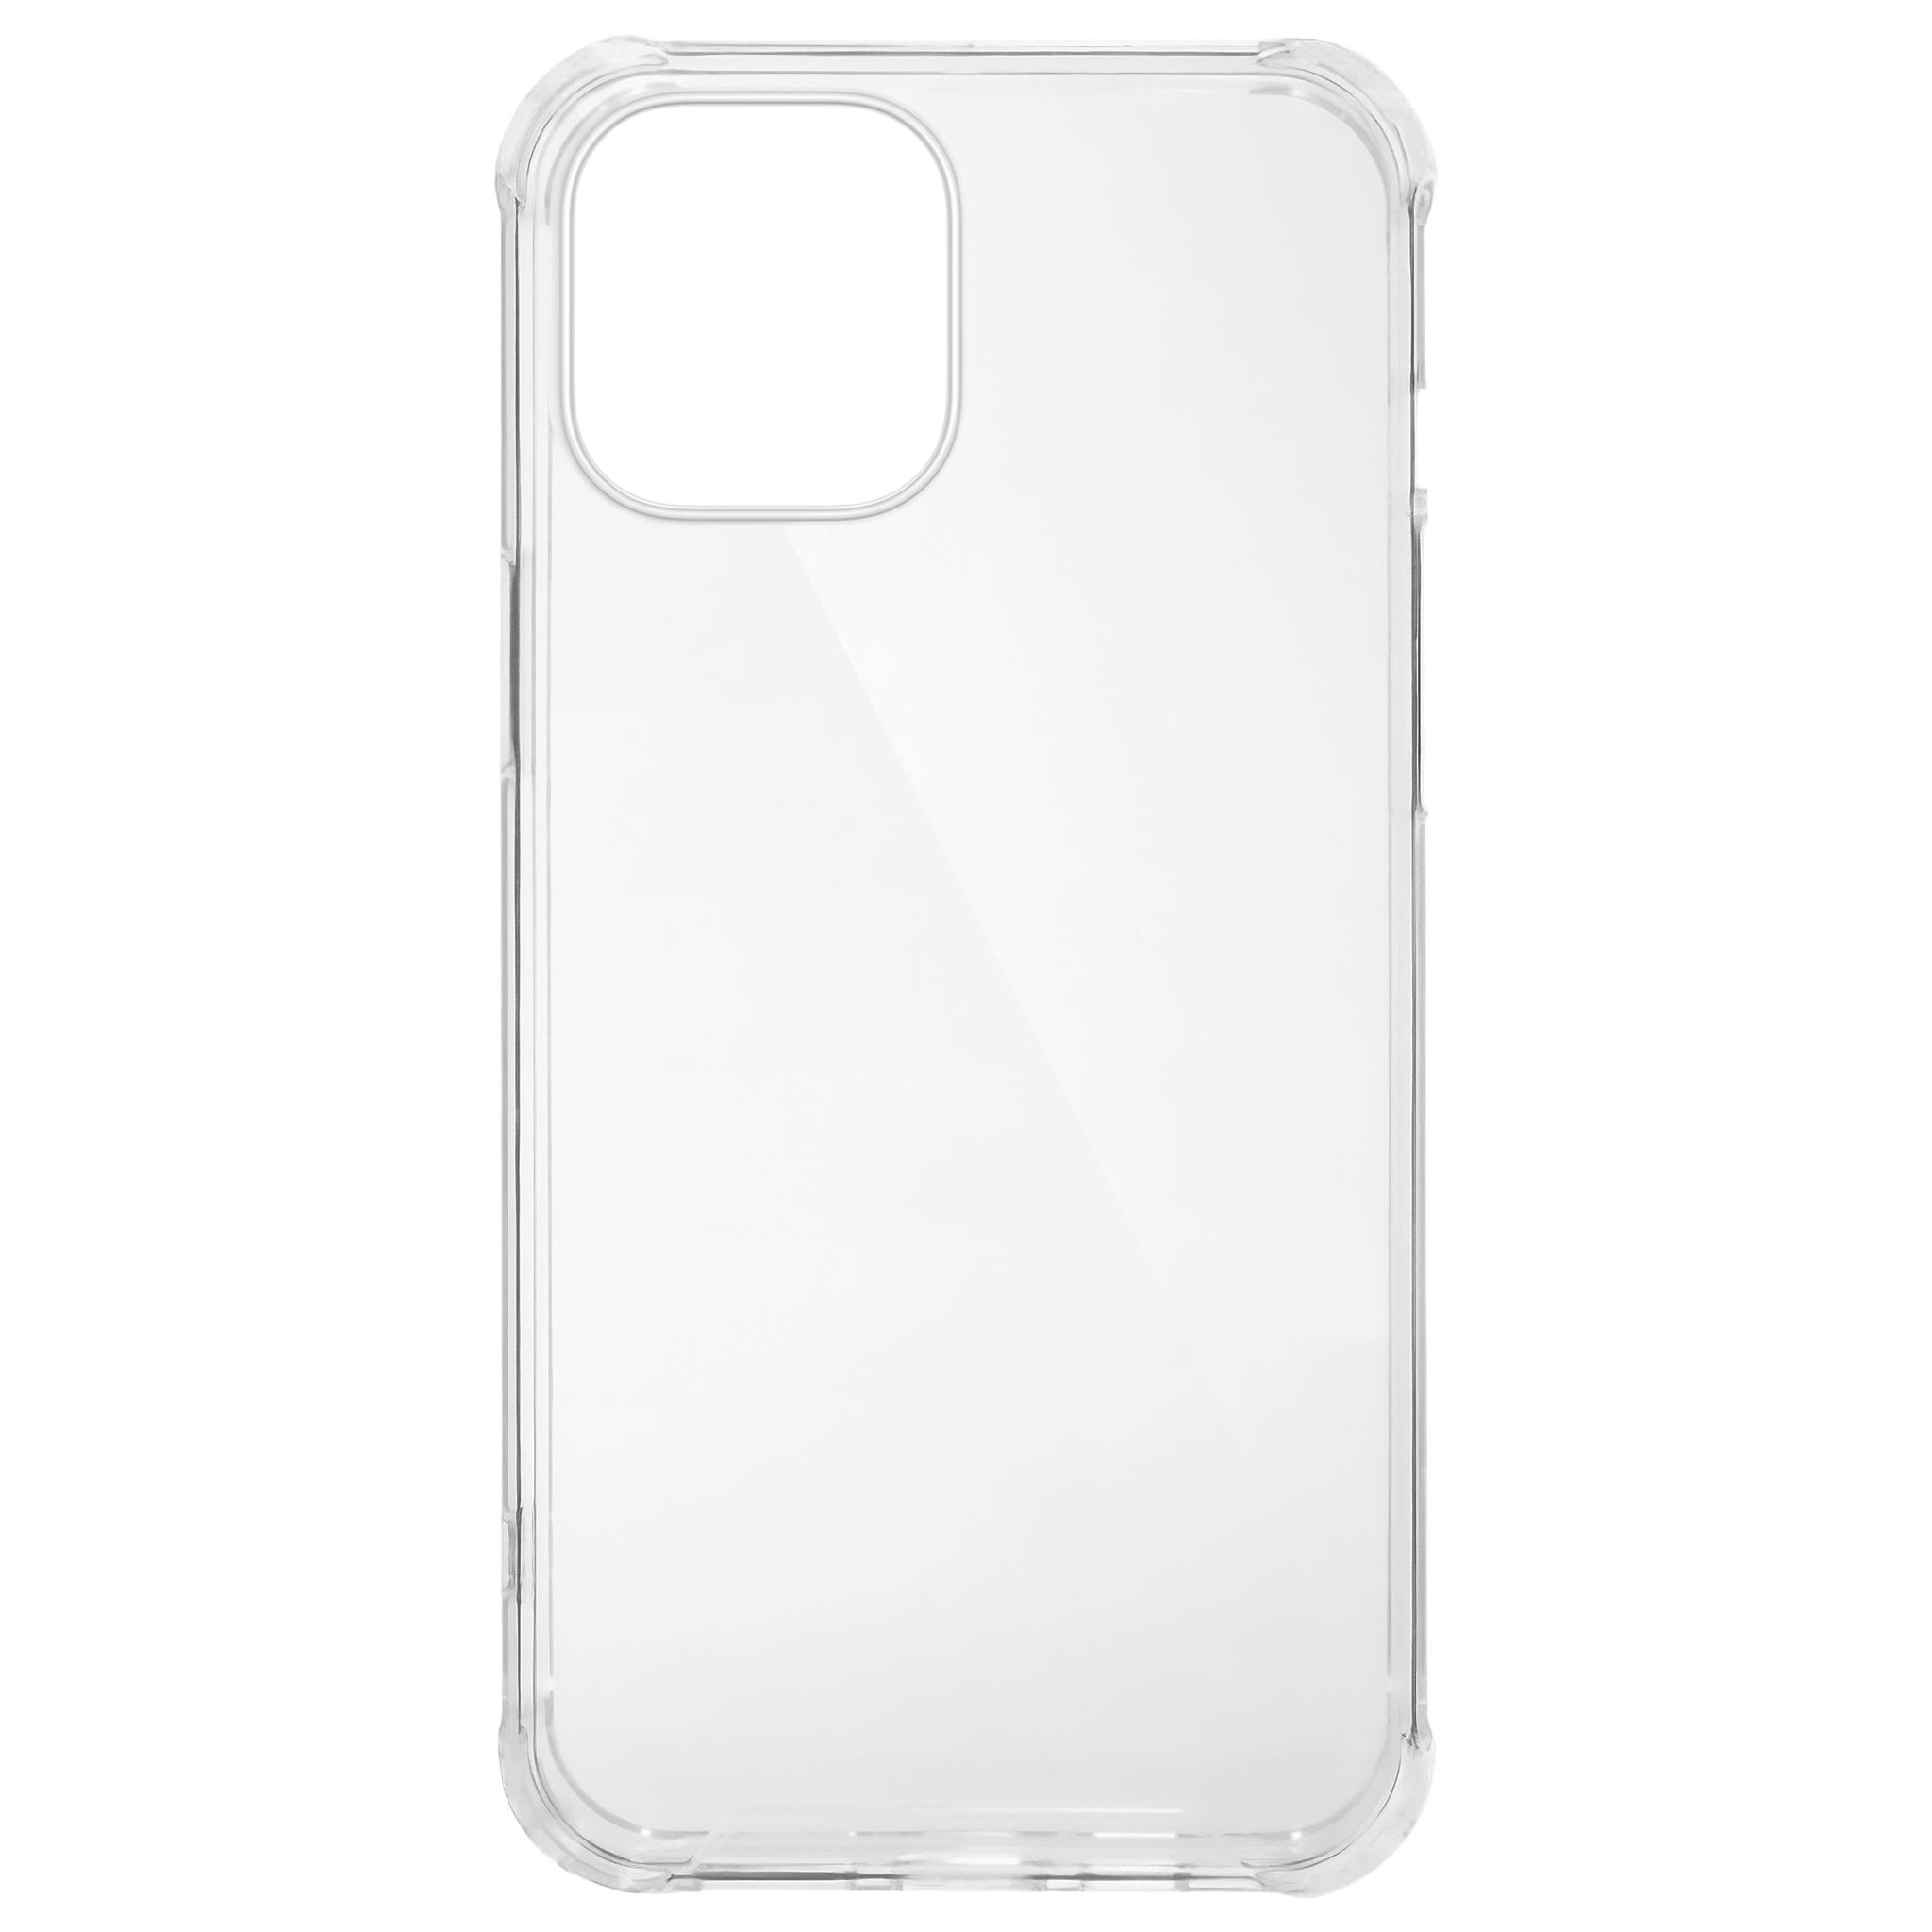 vervolging Blazen Anoniem Acrylic TPU iPhone 11 hoesje kopen? | Fixje